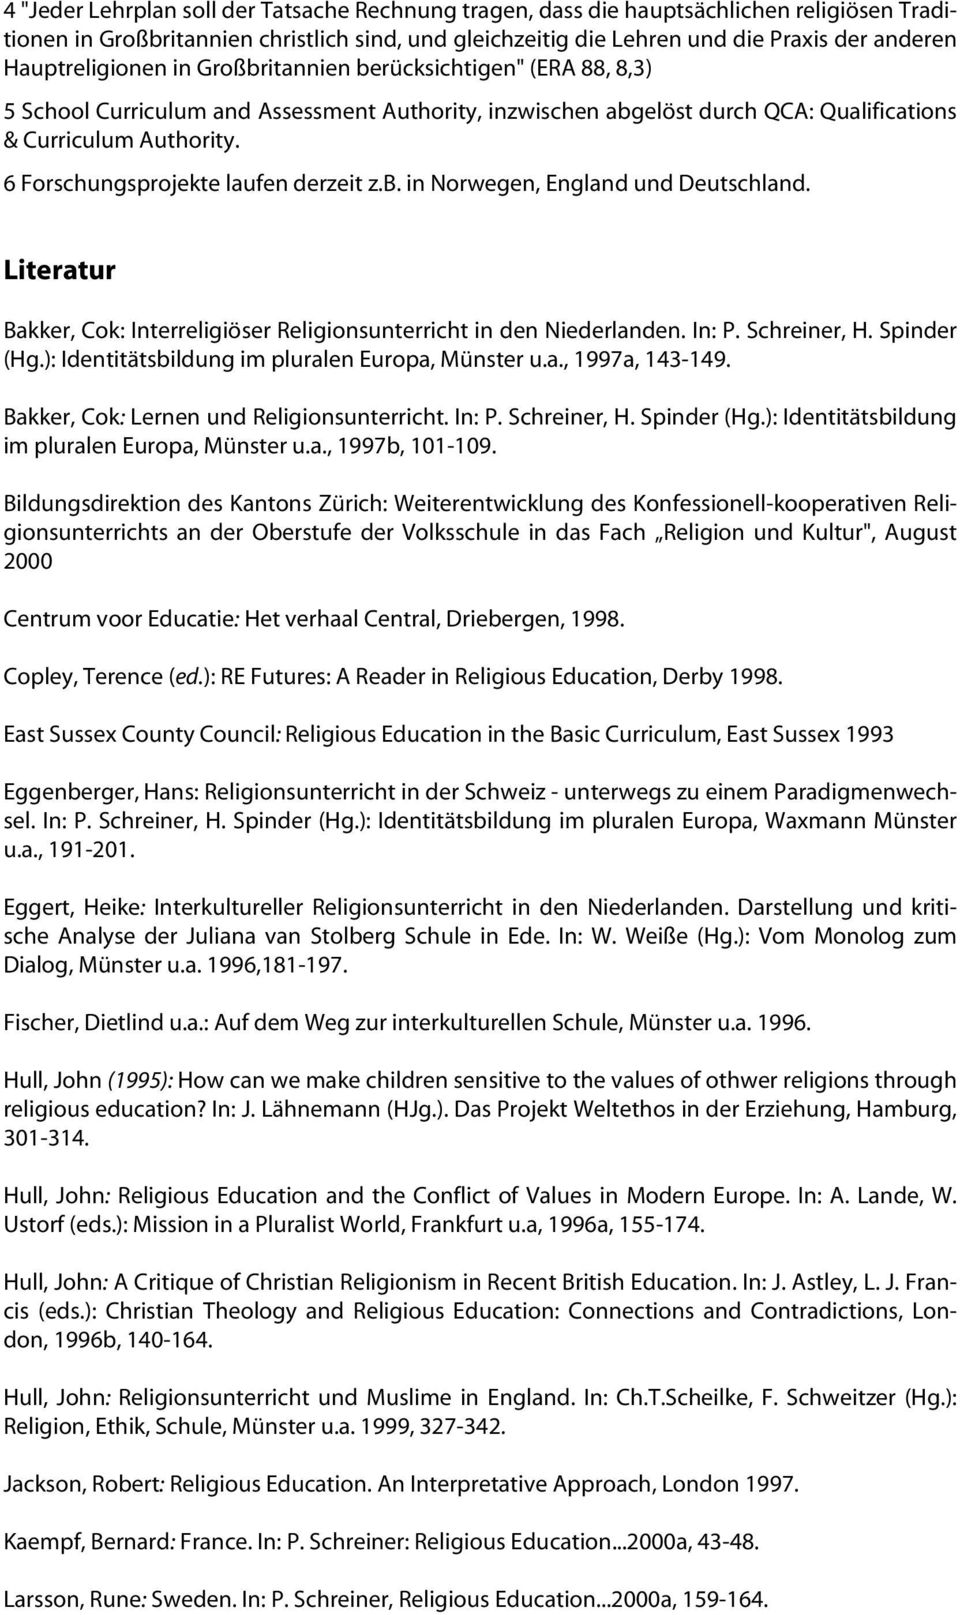 6 Forschungsprojekte laufen derzeit z.b. in Norwegen, England und Deutschland. Literatur Bakker, Cok: Interreligiöser Religionsunterricht in den Niederlanden. In: P. Schreiner, H. Spinder (Hg.